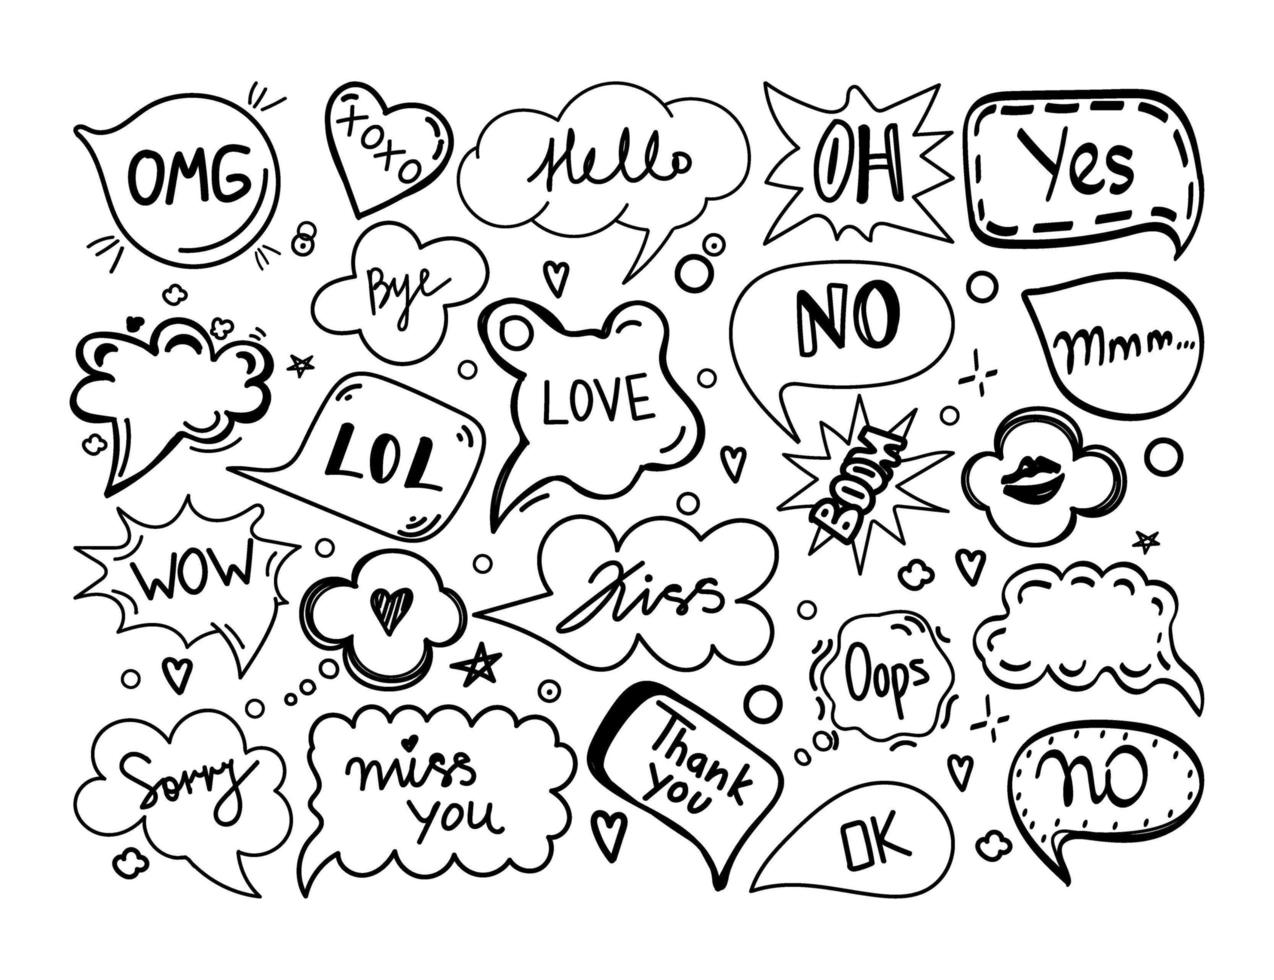 um conjunto de bolhas do discurso com palavras de diálogo estilo doodle desenhados à mão. Olá, amor, desculpe, amor, beijo, não, tchau, omg, trilha de beijo, boom, lol. modelos de fala. ilustração vetorial. vetor